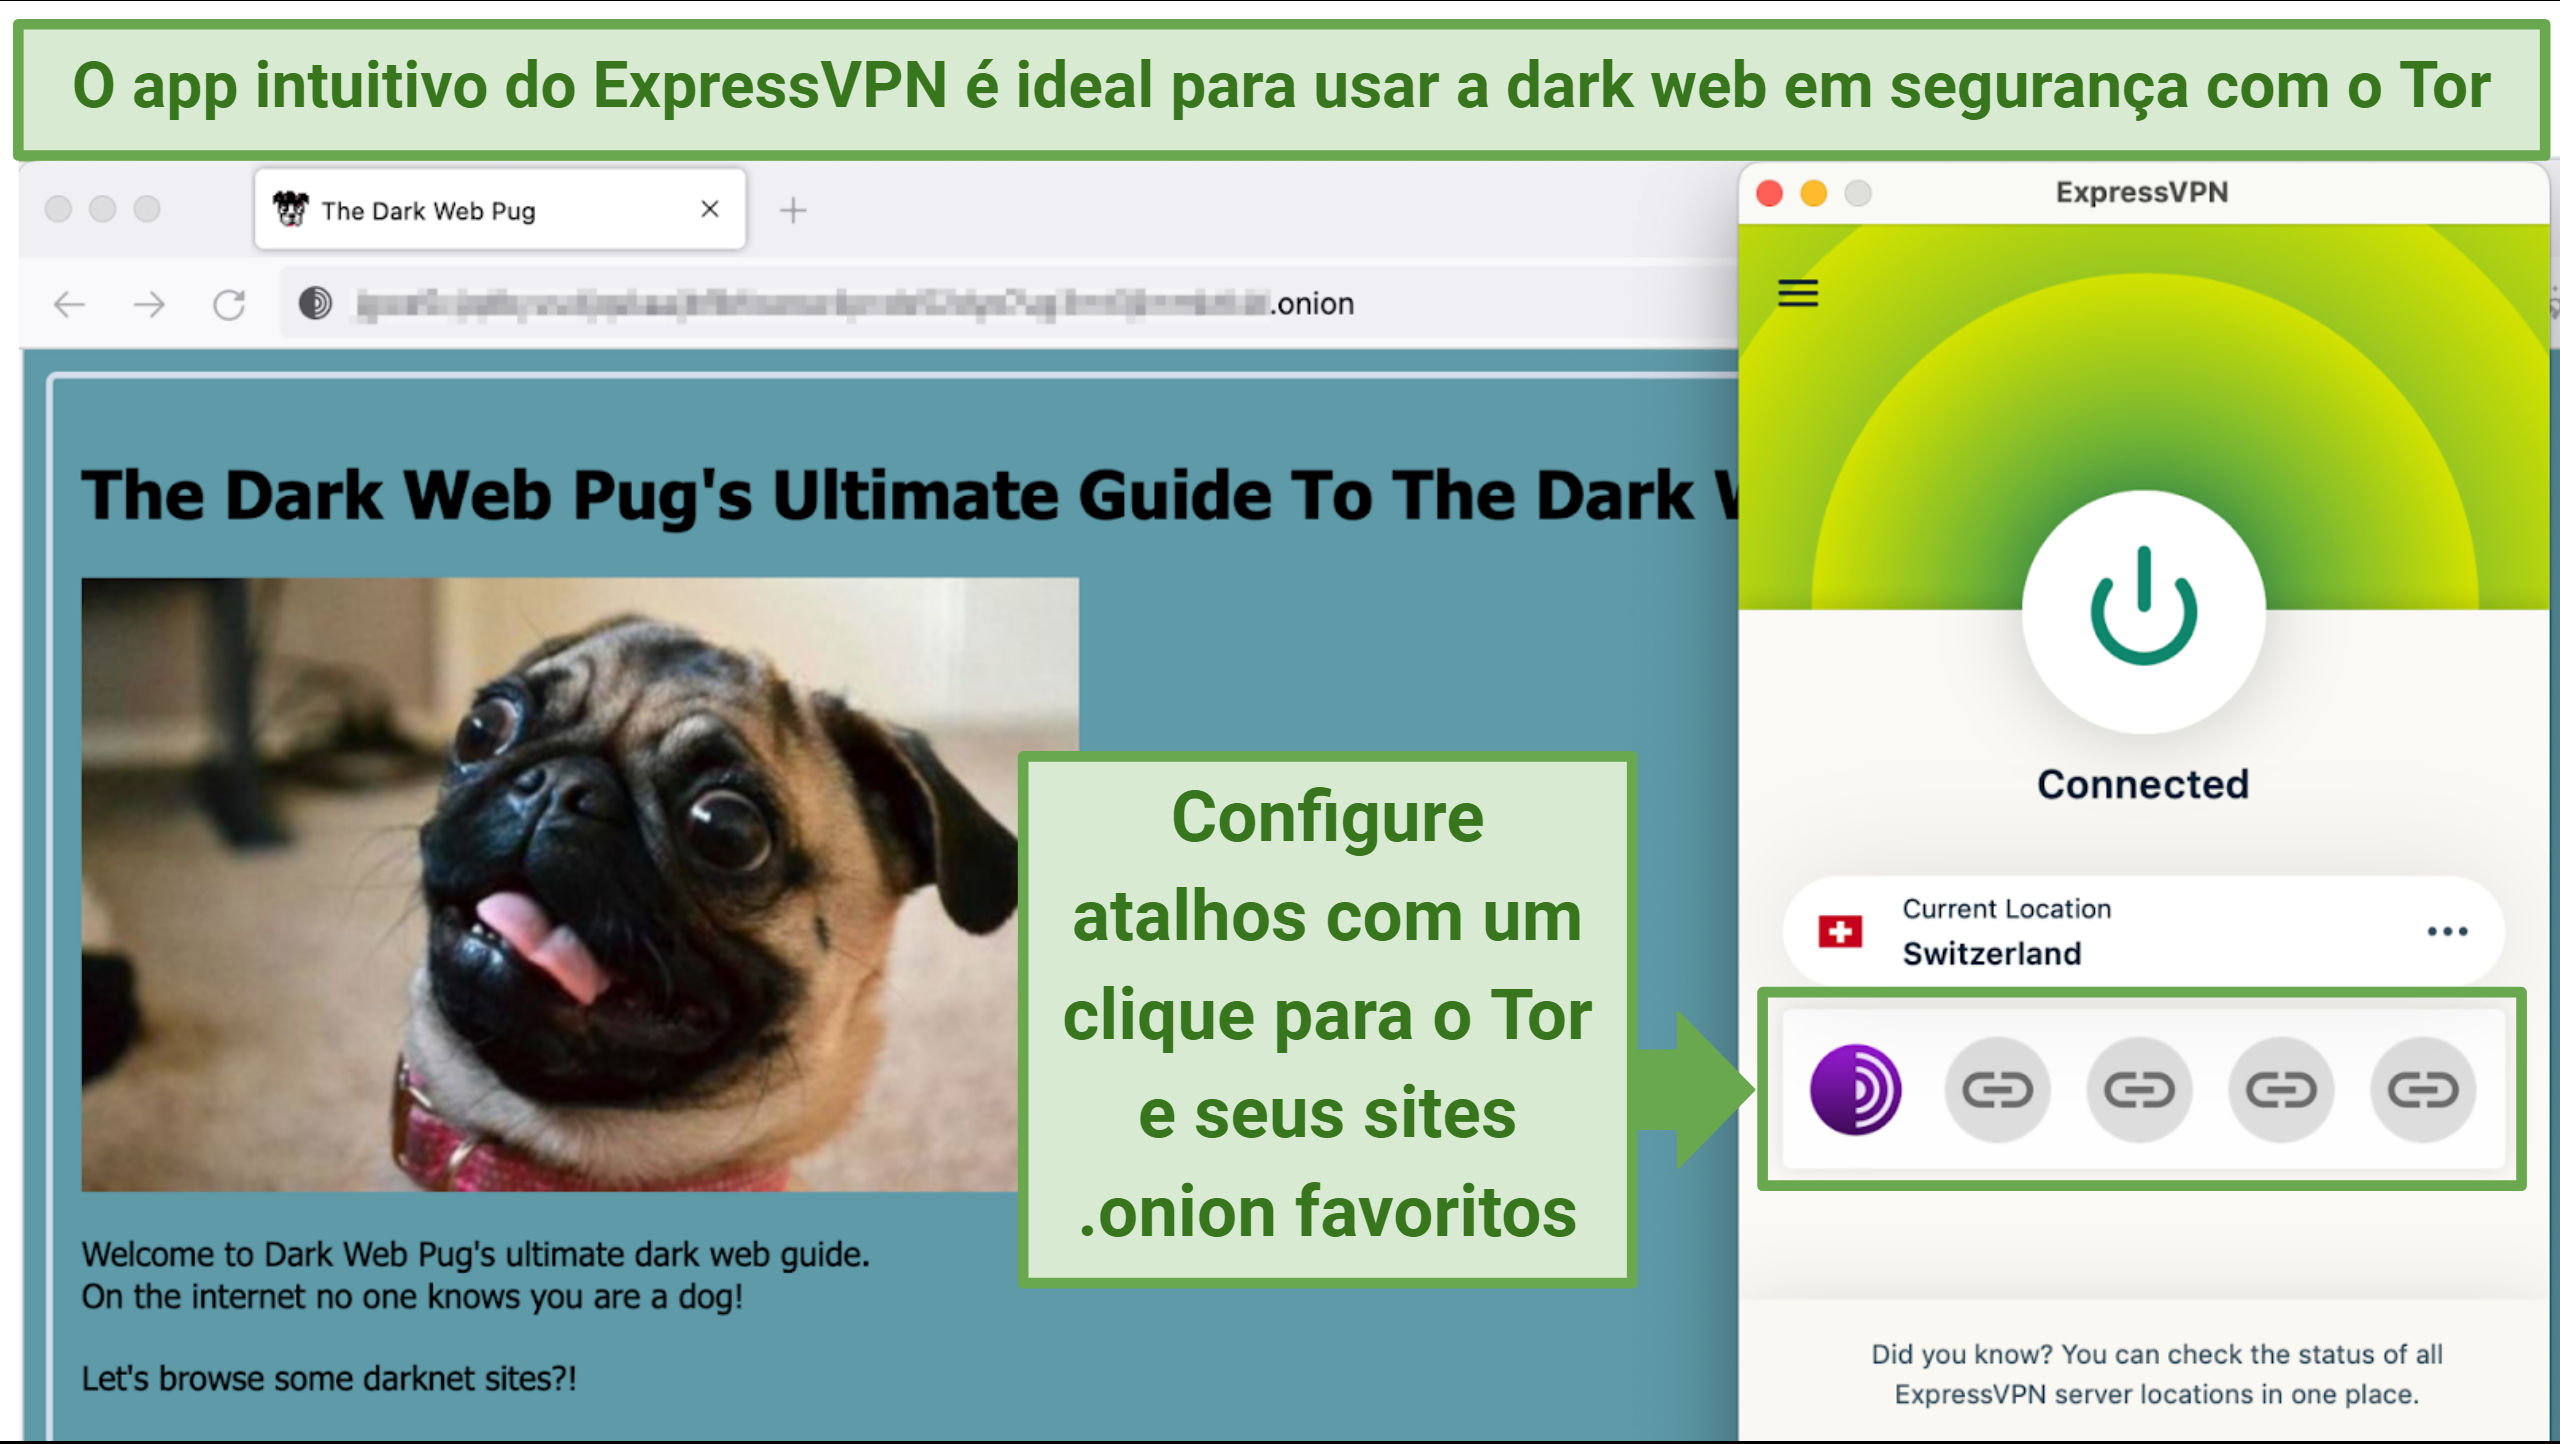 Captura de tela mostrando um site da dark web no navegador Tor com o aplicativo ExpressVPN conectado a um servidor na Suíça